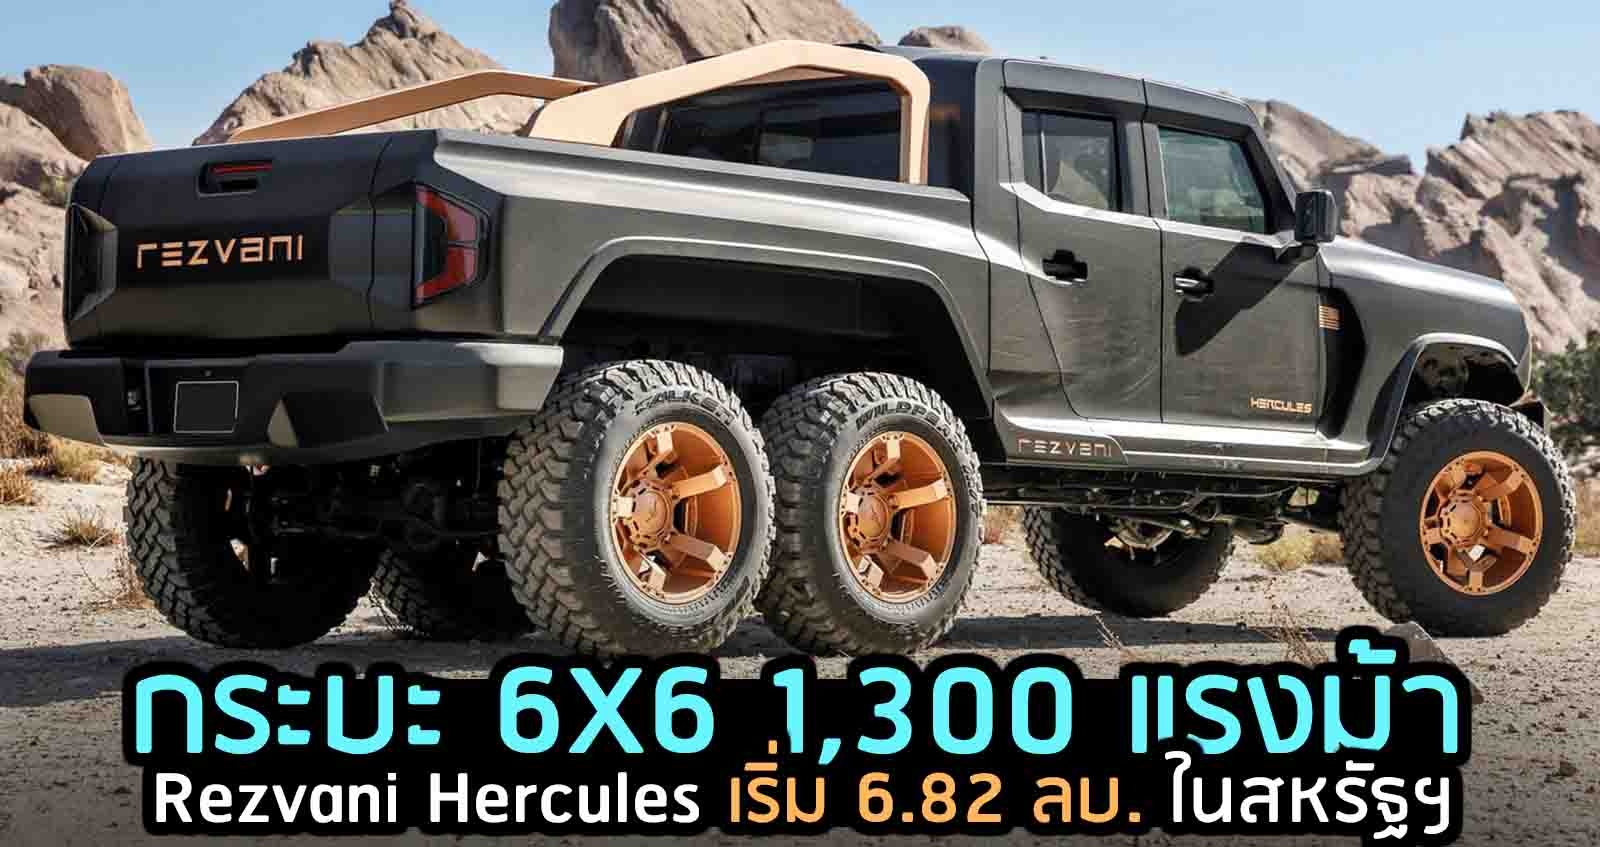 เปิดตัว Rezvani Hercules  กระบะ 1,300 แรงม้า ขับเคลื่อน 6WD ราคาเริ่ม 6.82 ลบ. ในสหรัฐฯ